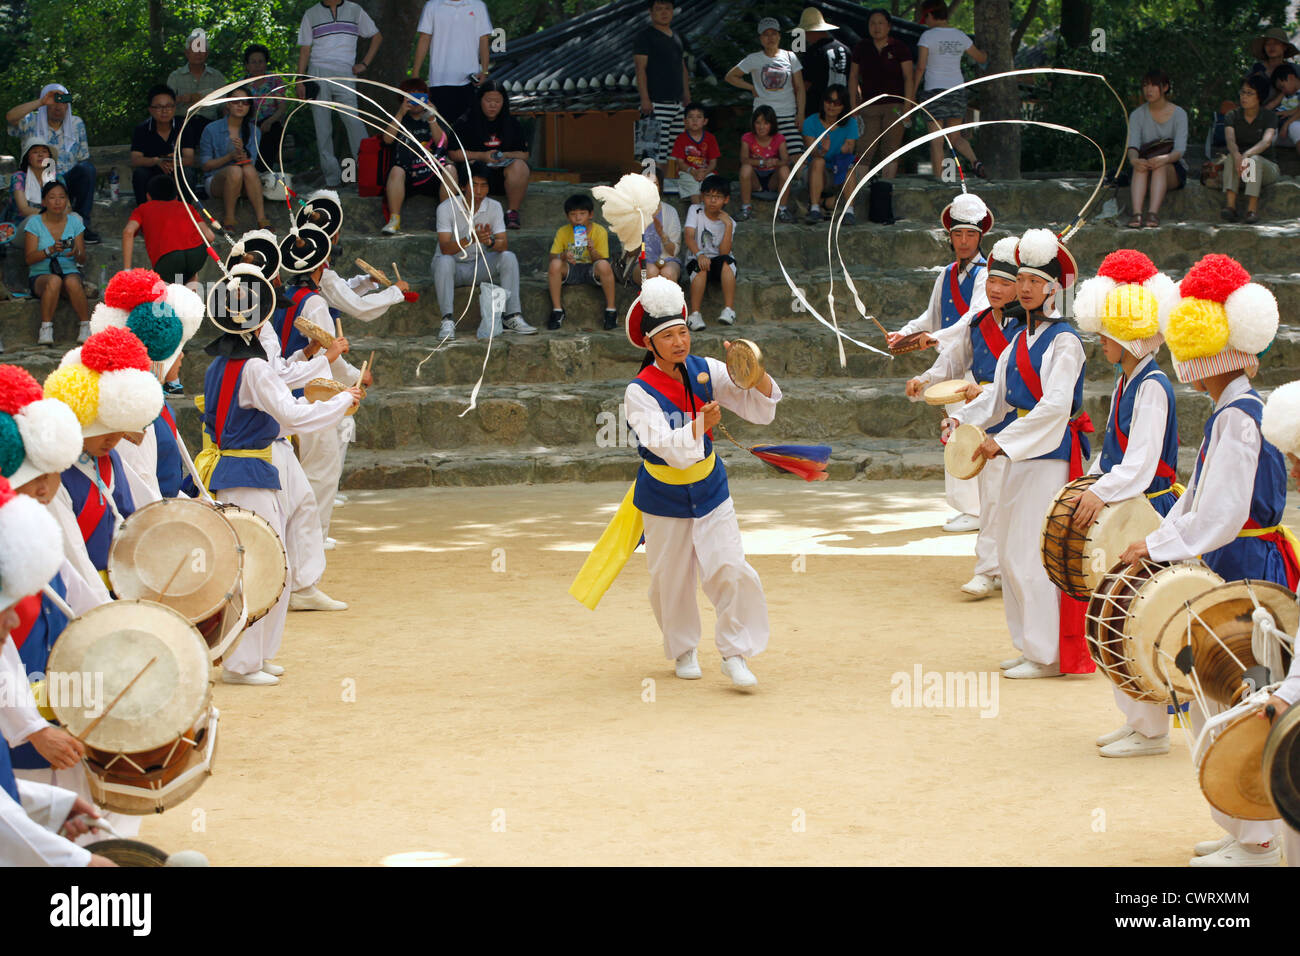 La fin de la Corée traditionnelle La danse à l'agriculteurs Korean Folk Village de Yongin, Corée. Banque D'Images